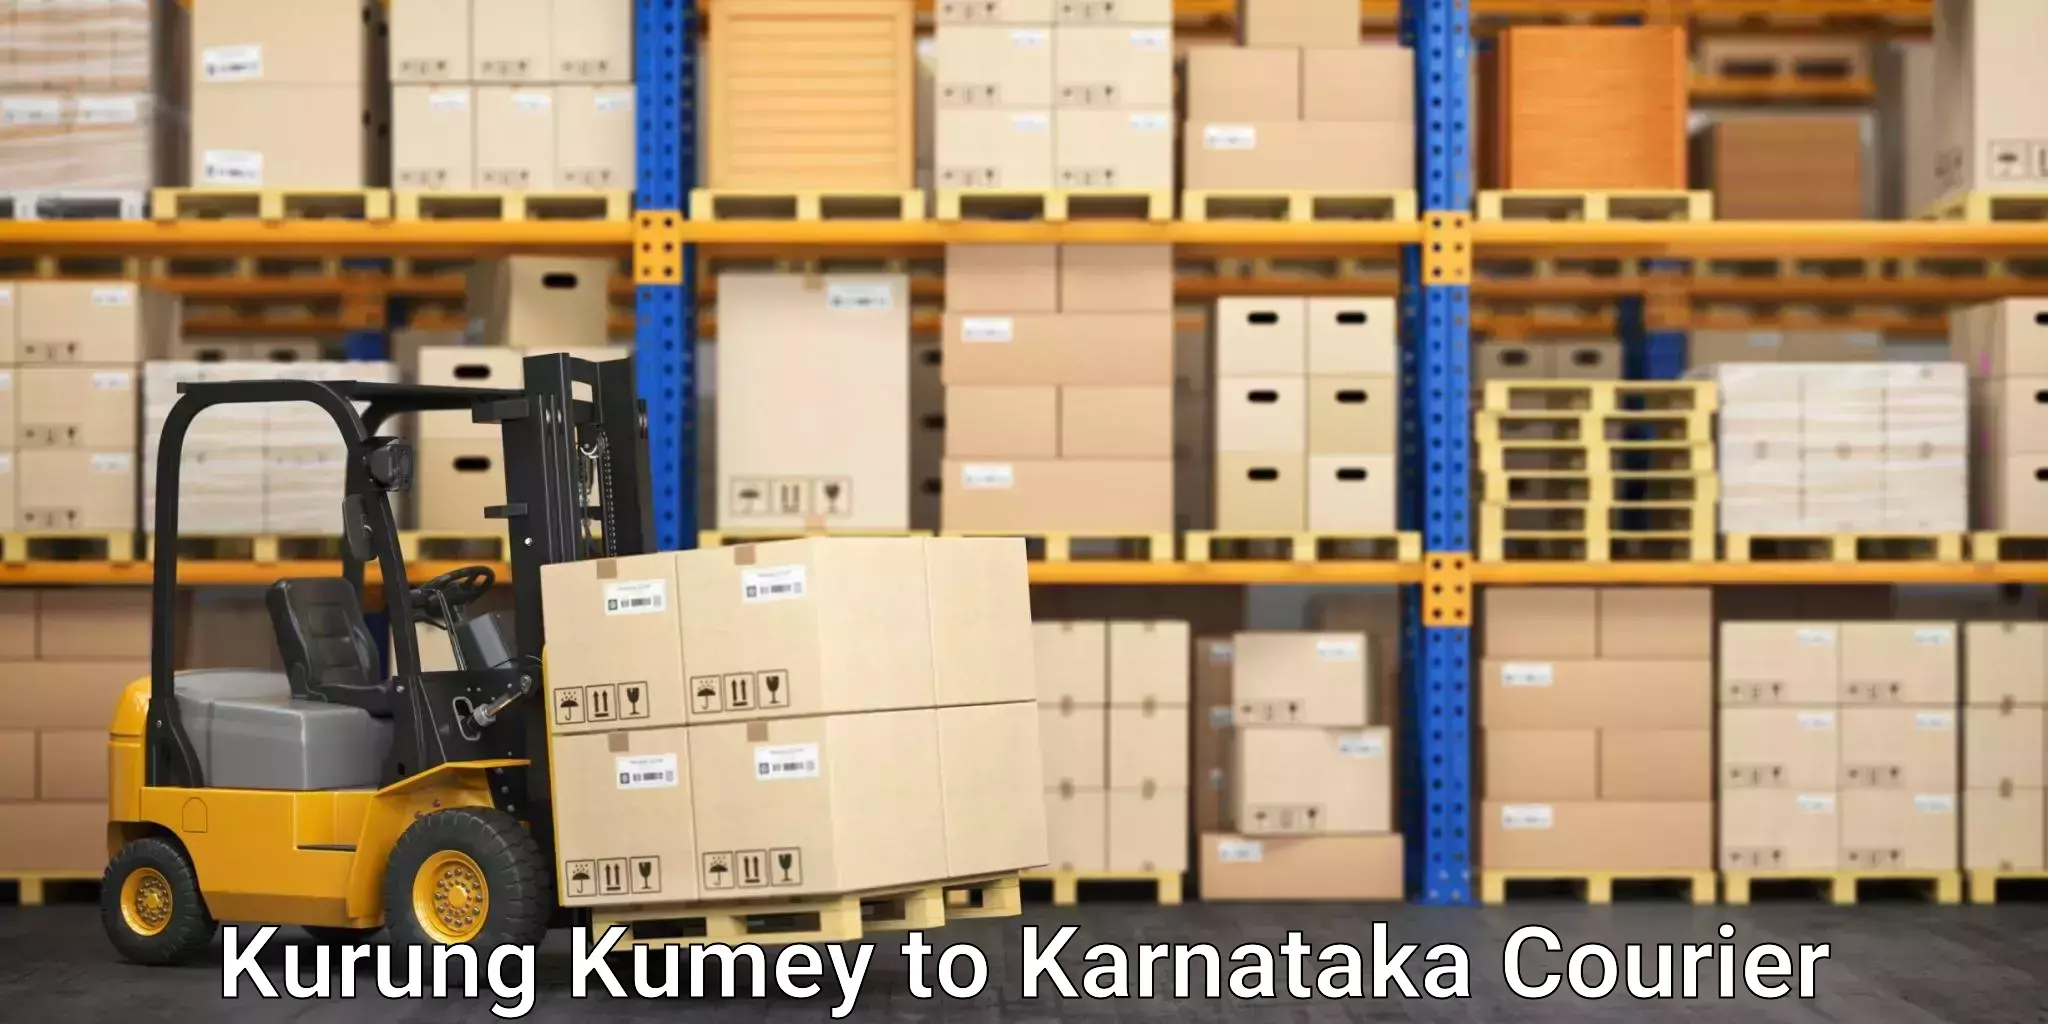 Expedited shipping solutions Kurung Kumey to Hiriyur